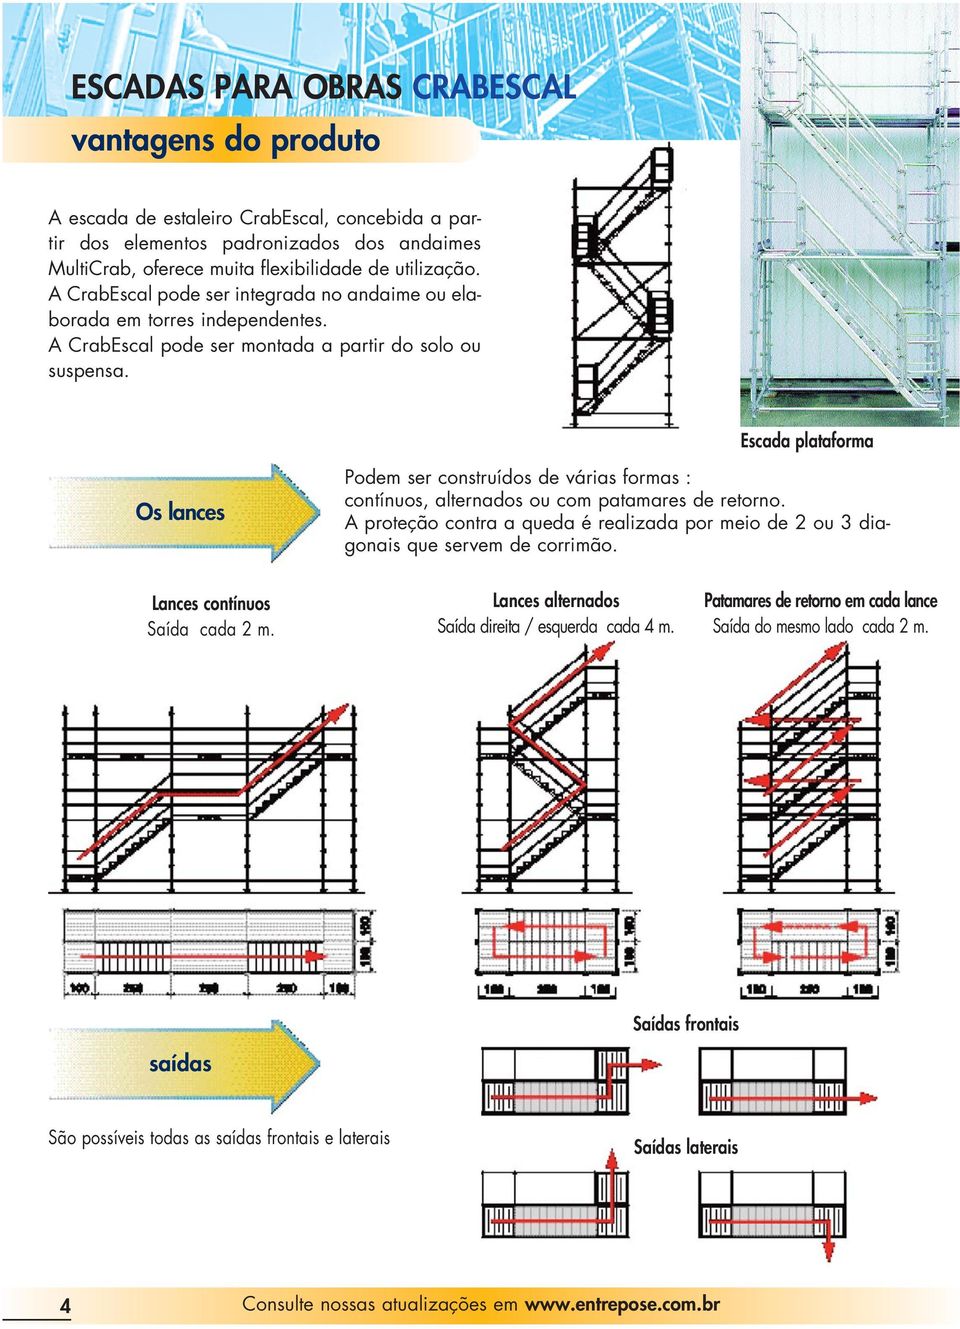 Escada plataforma Os lances Podem ser construídos de várias formas : contínuos, alternados ou com patamares de retorno.